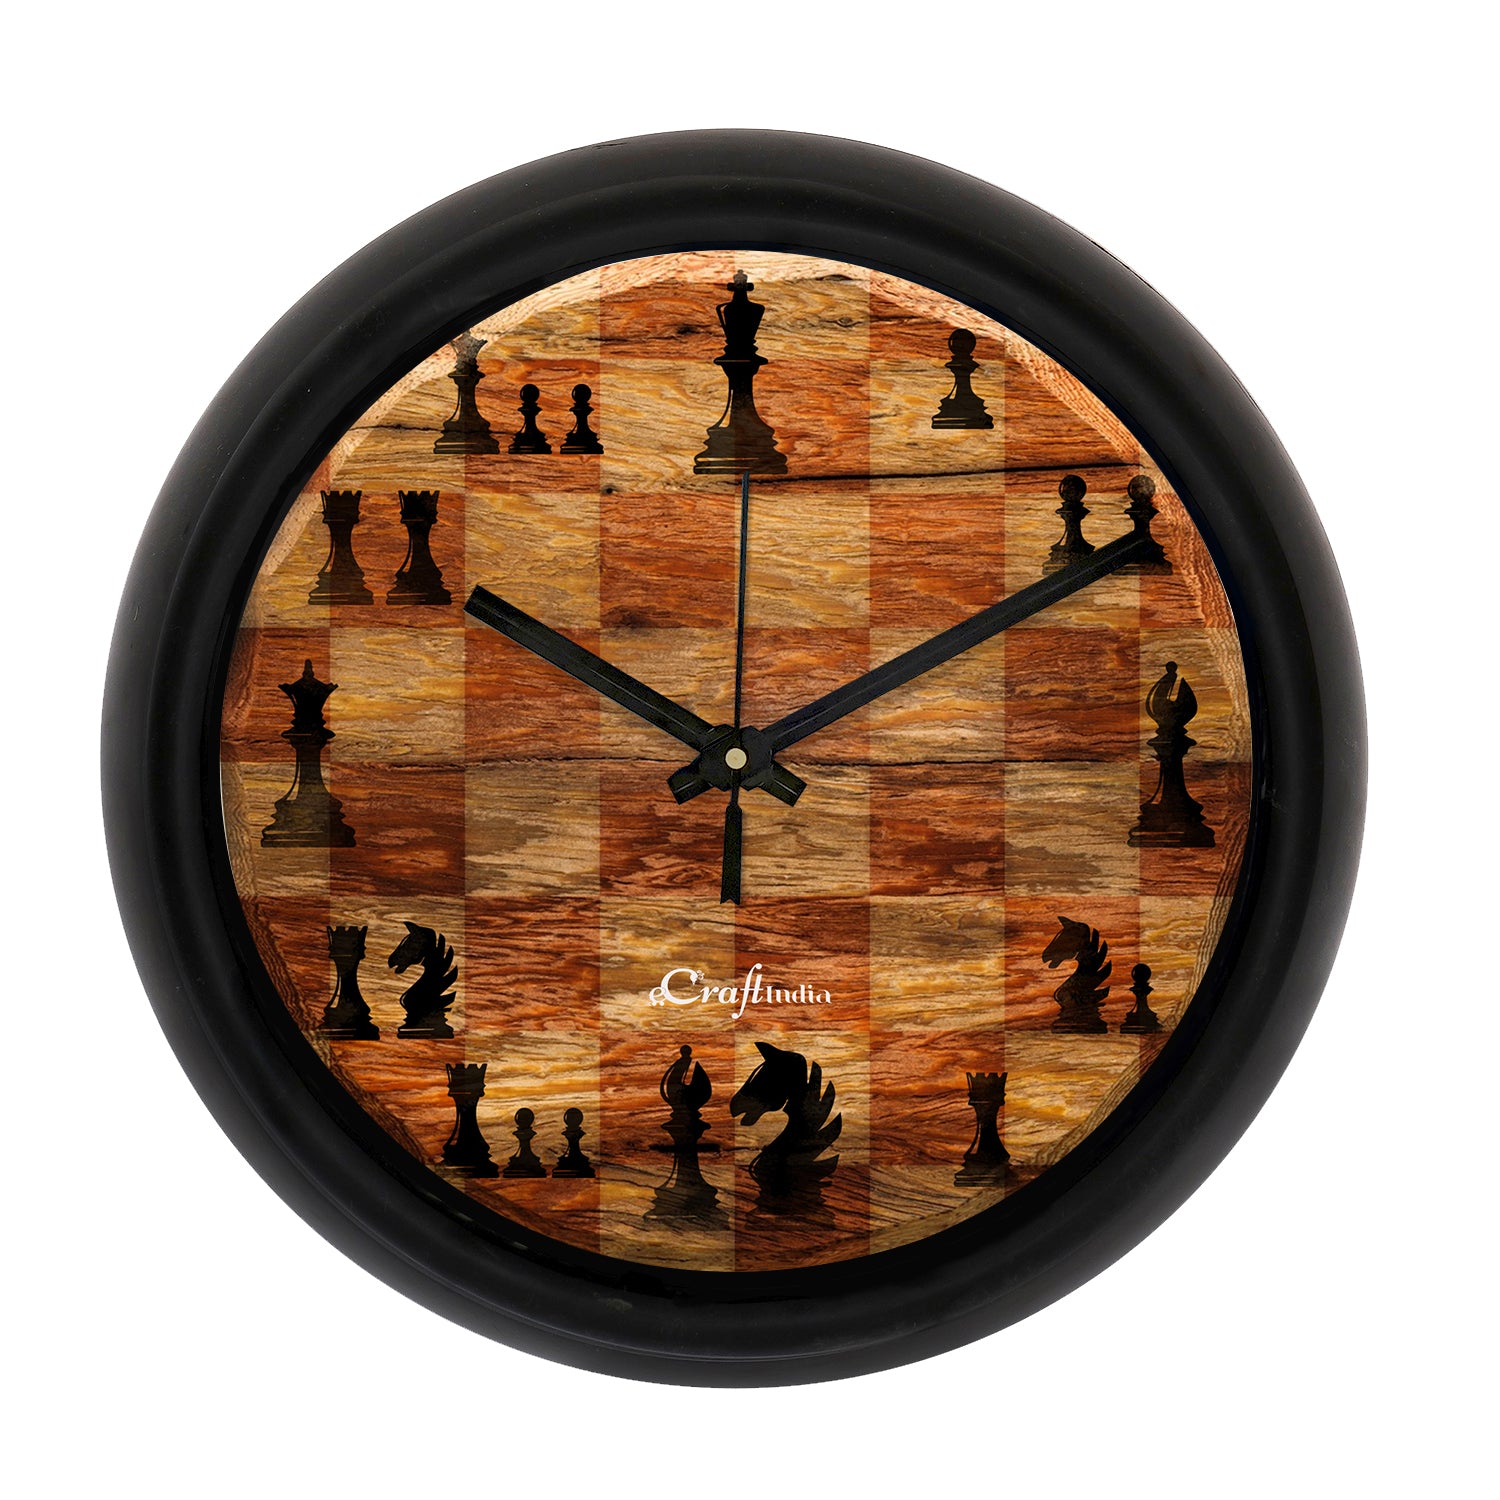 Chess Game Theme Round Shape Analog Designer Wall Clock